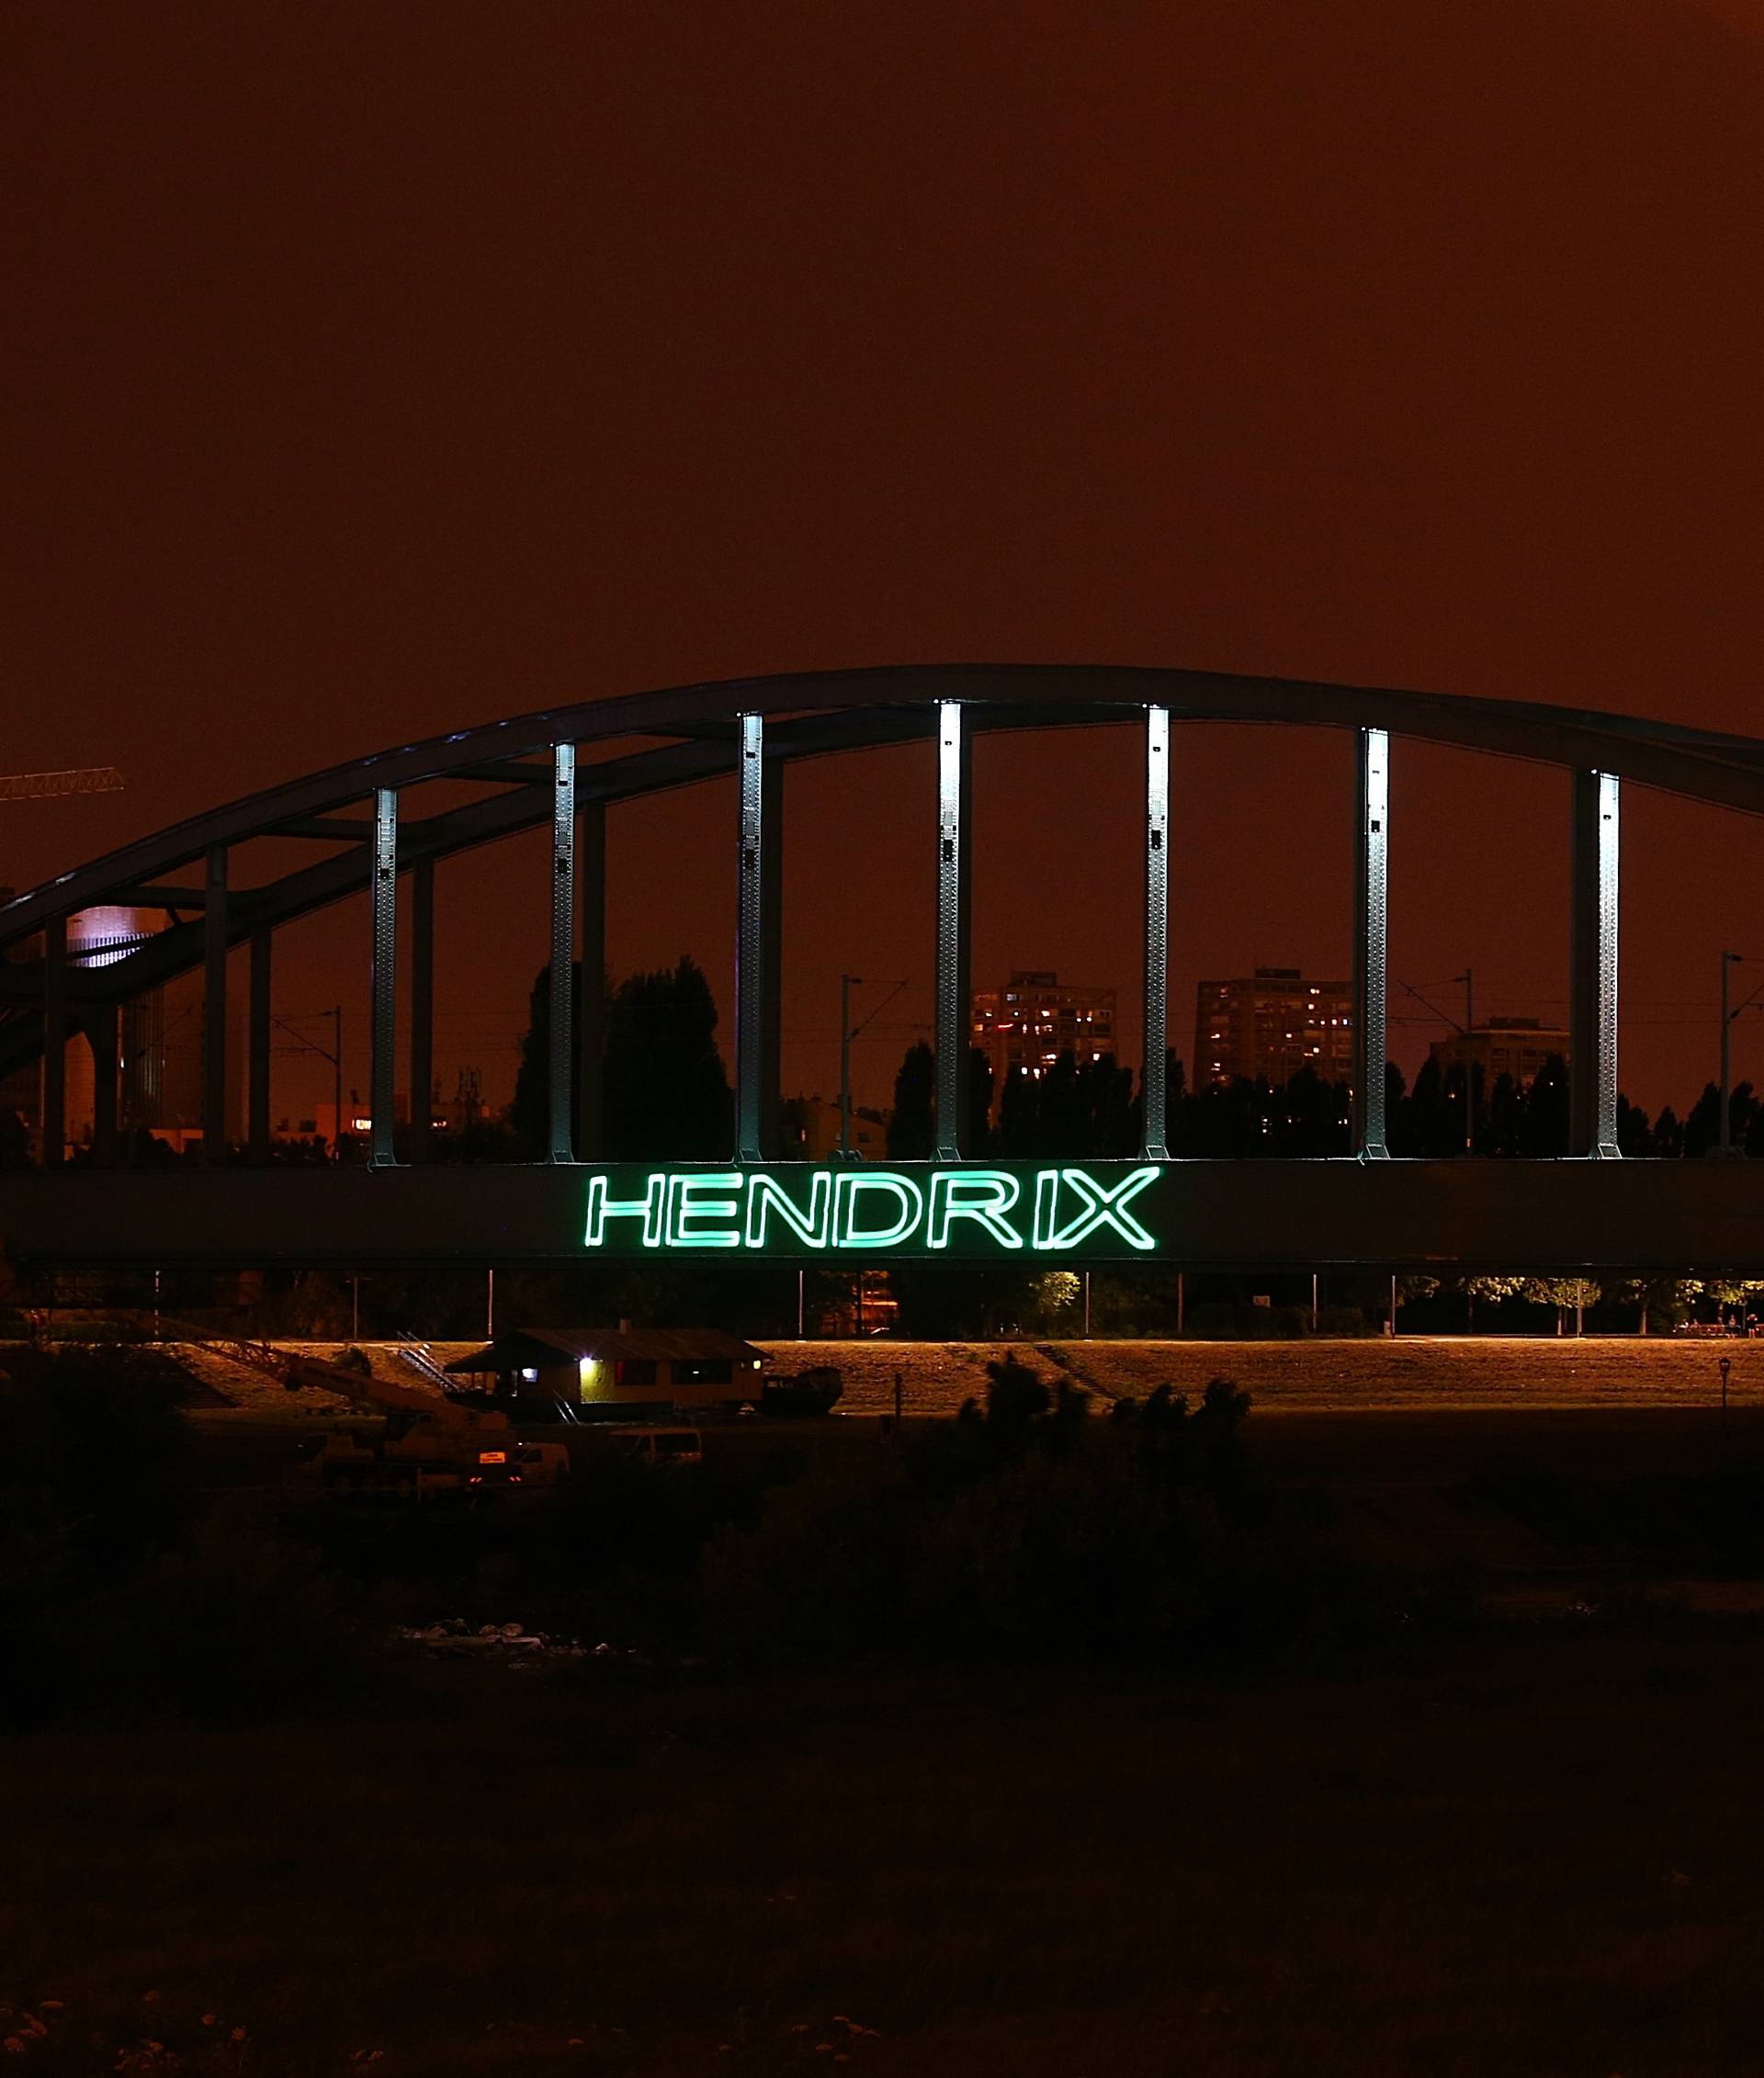 Mile baš voli disko: Hendrixov most sad ima svjetleći natpis!